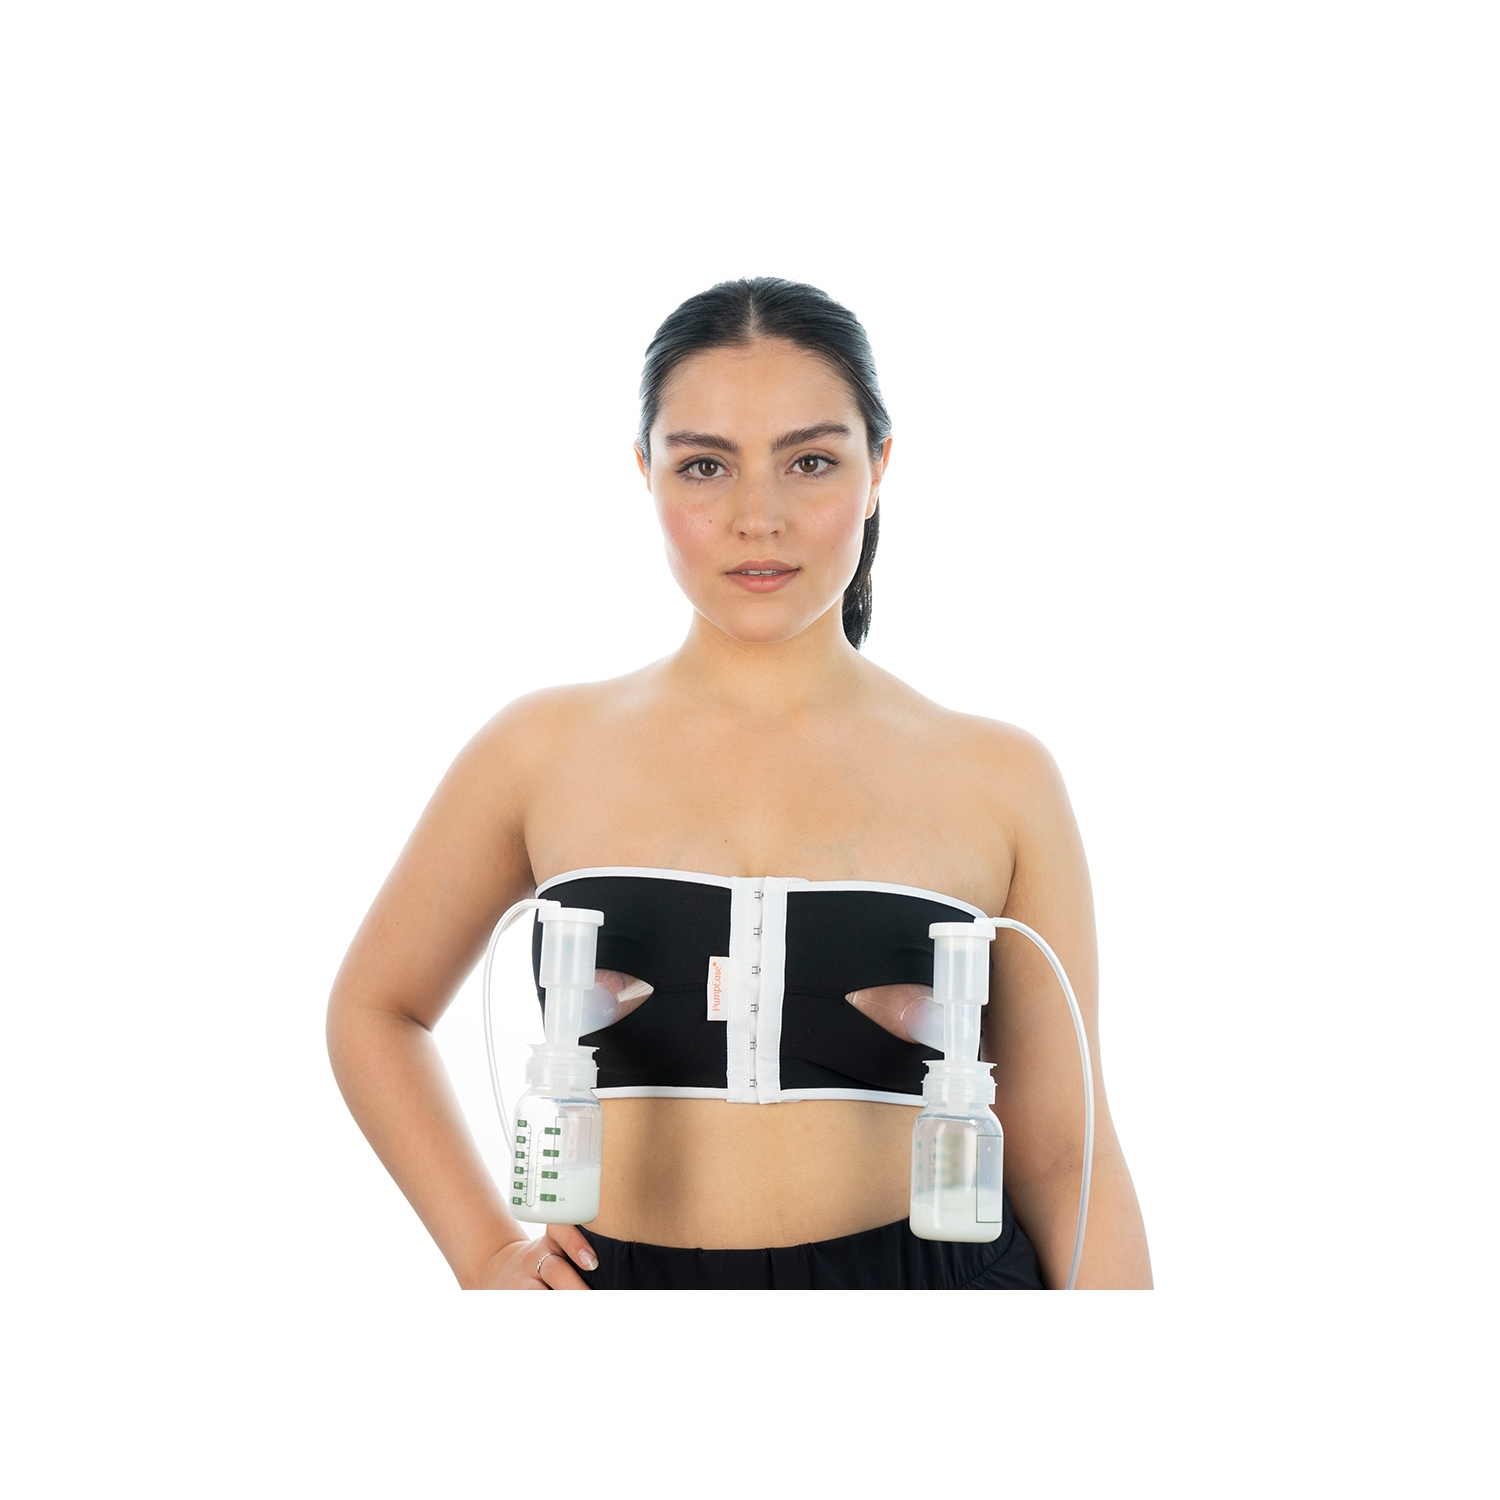 PumpEase® hands-free pumping bra * pump breastmilk hands free